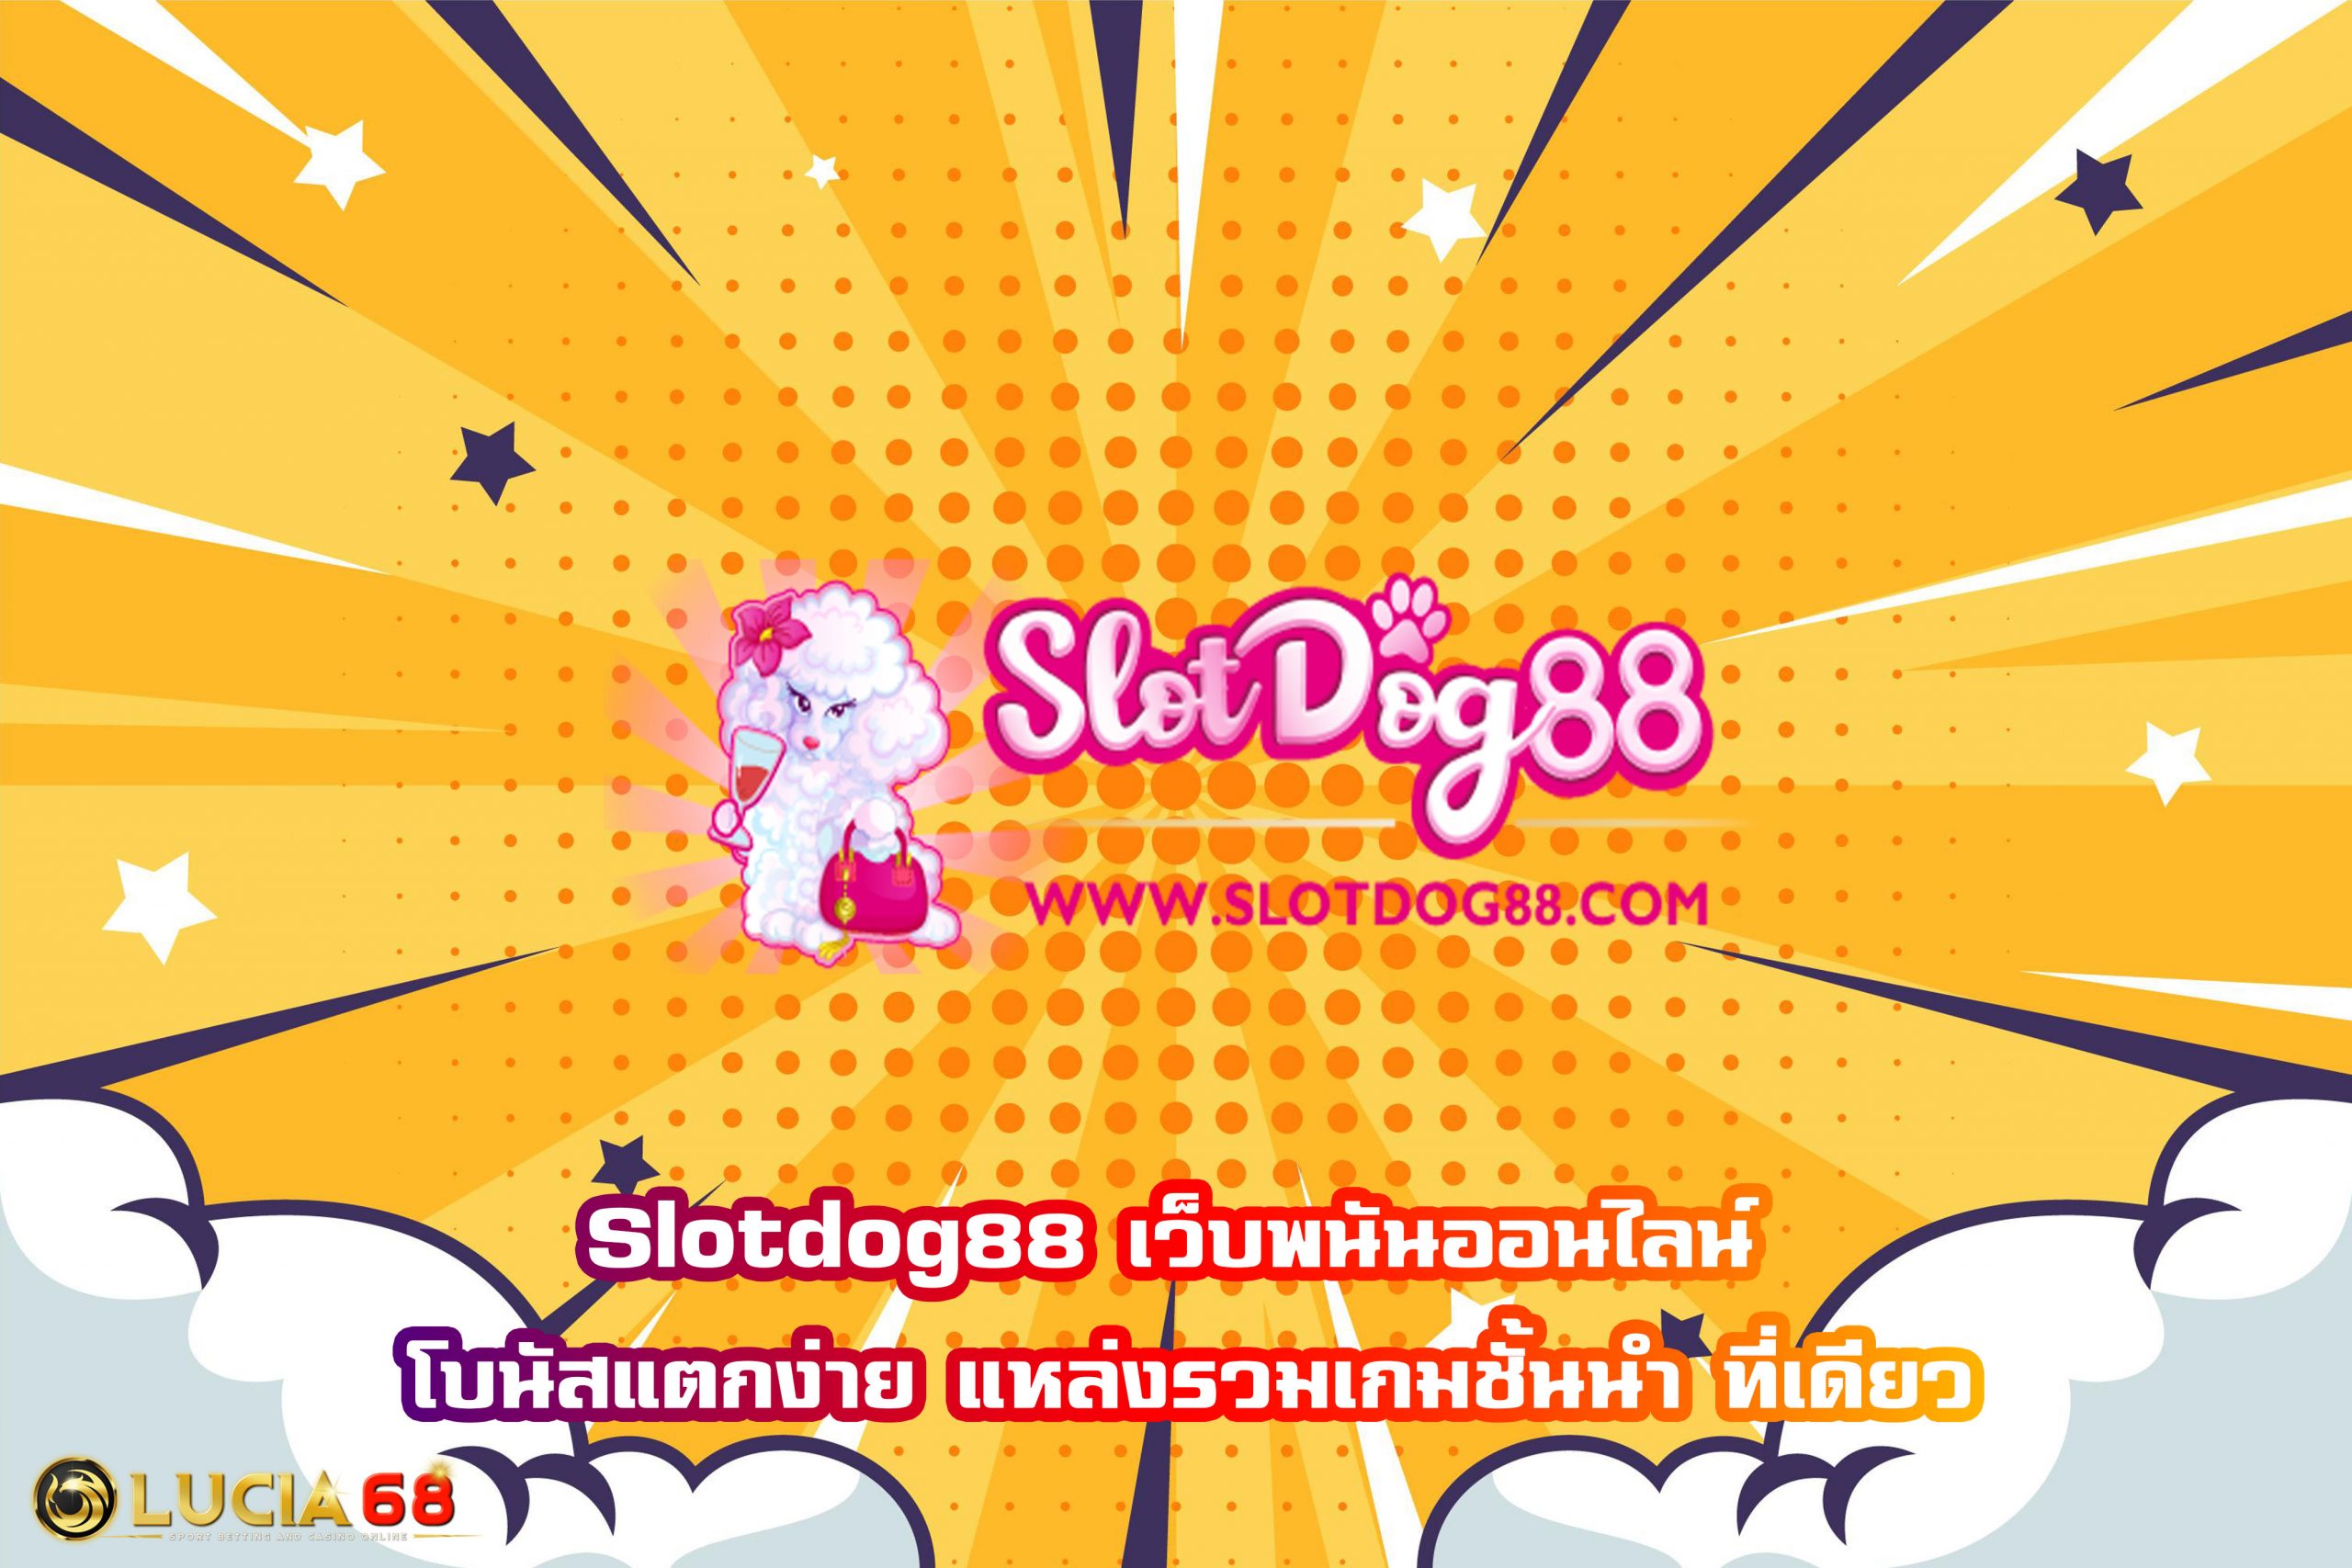 Slotdog88 เว็บพนันออนไลน์ โบนัสแตกง่าย แหล่งรวมเกมชั้นนำ ที่เดียว